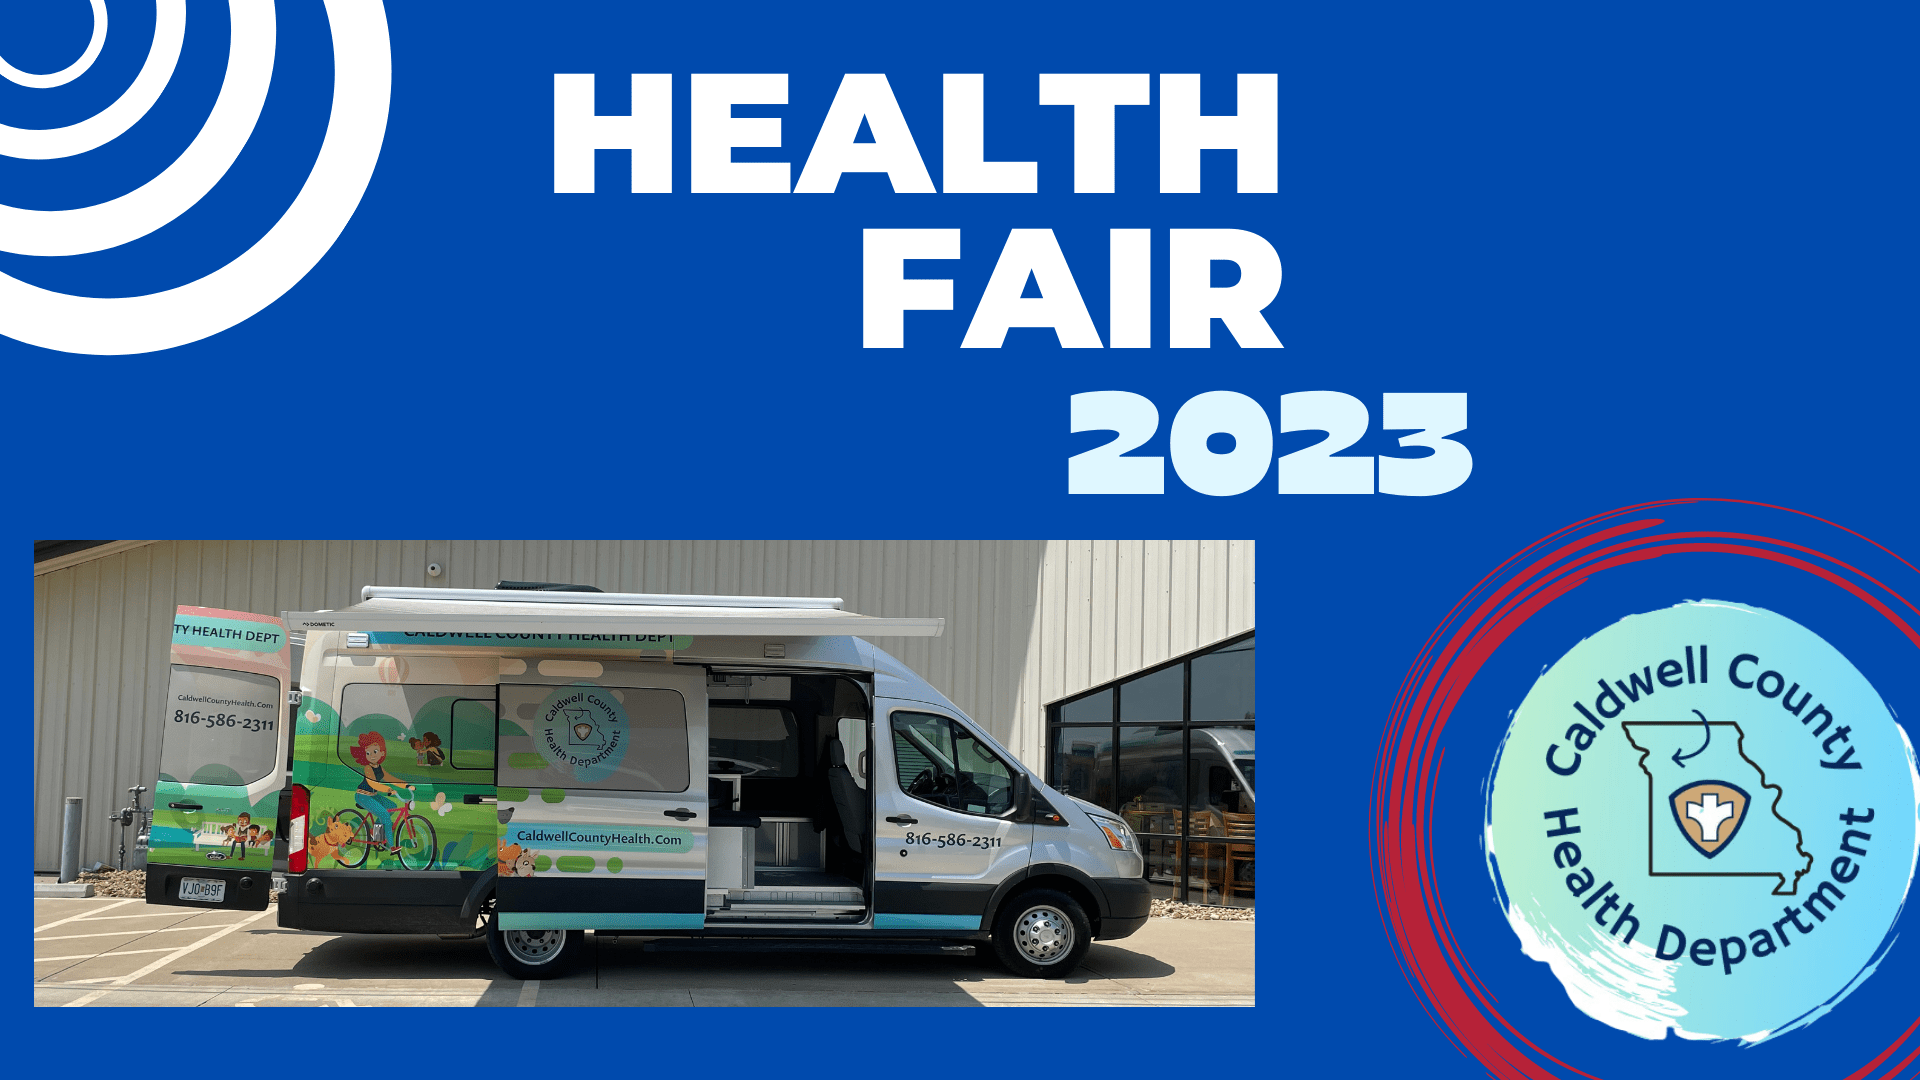 Health Fair 2023 logo and illustration